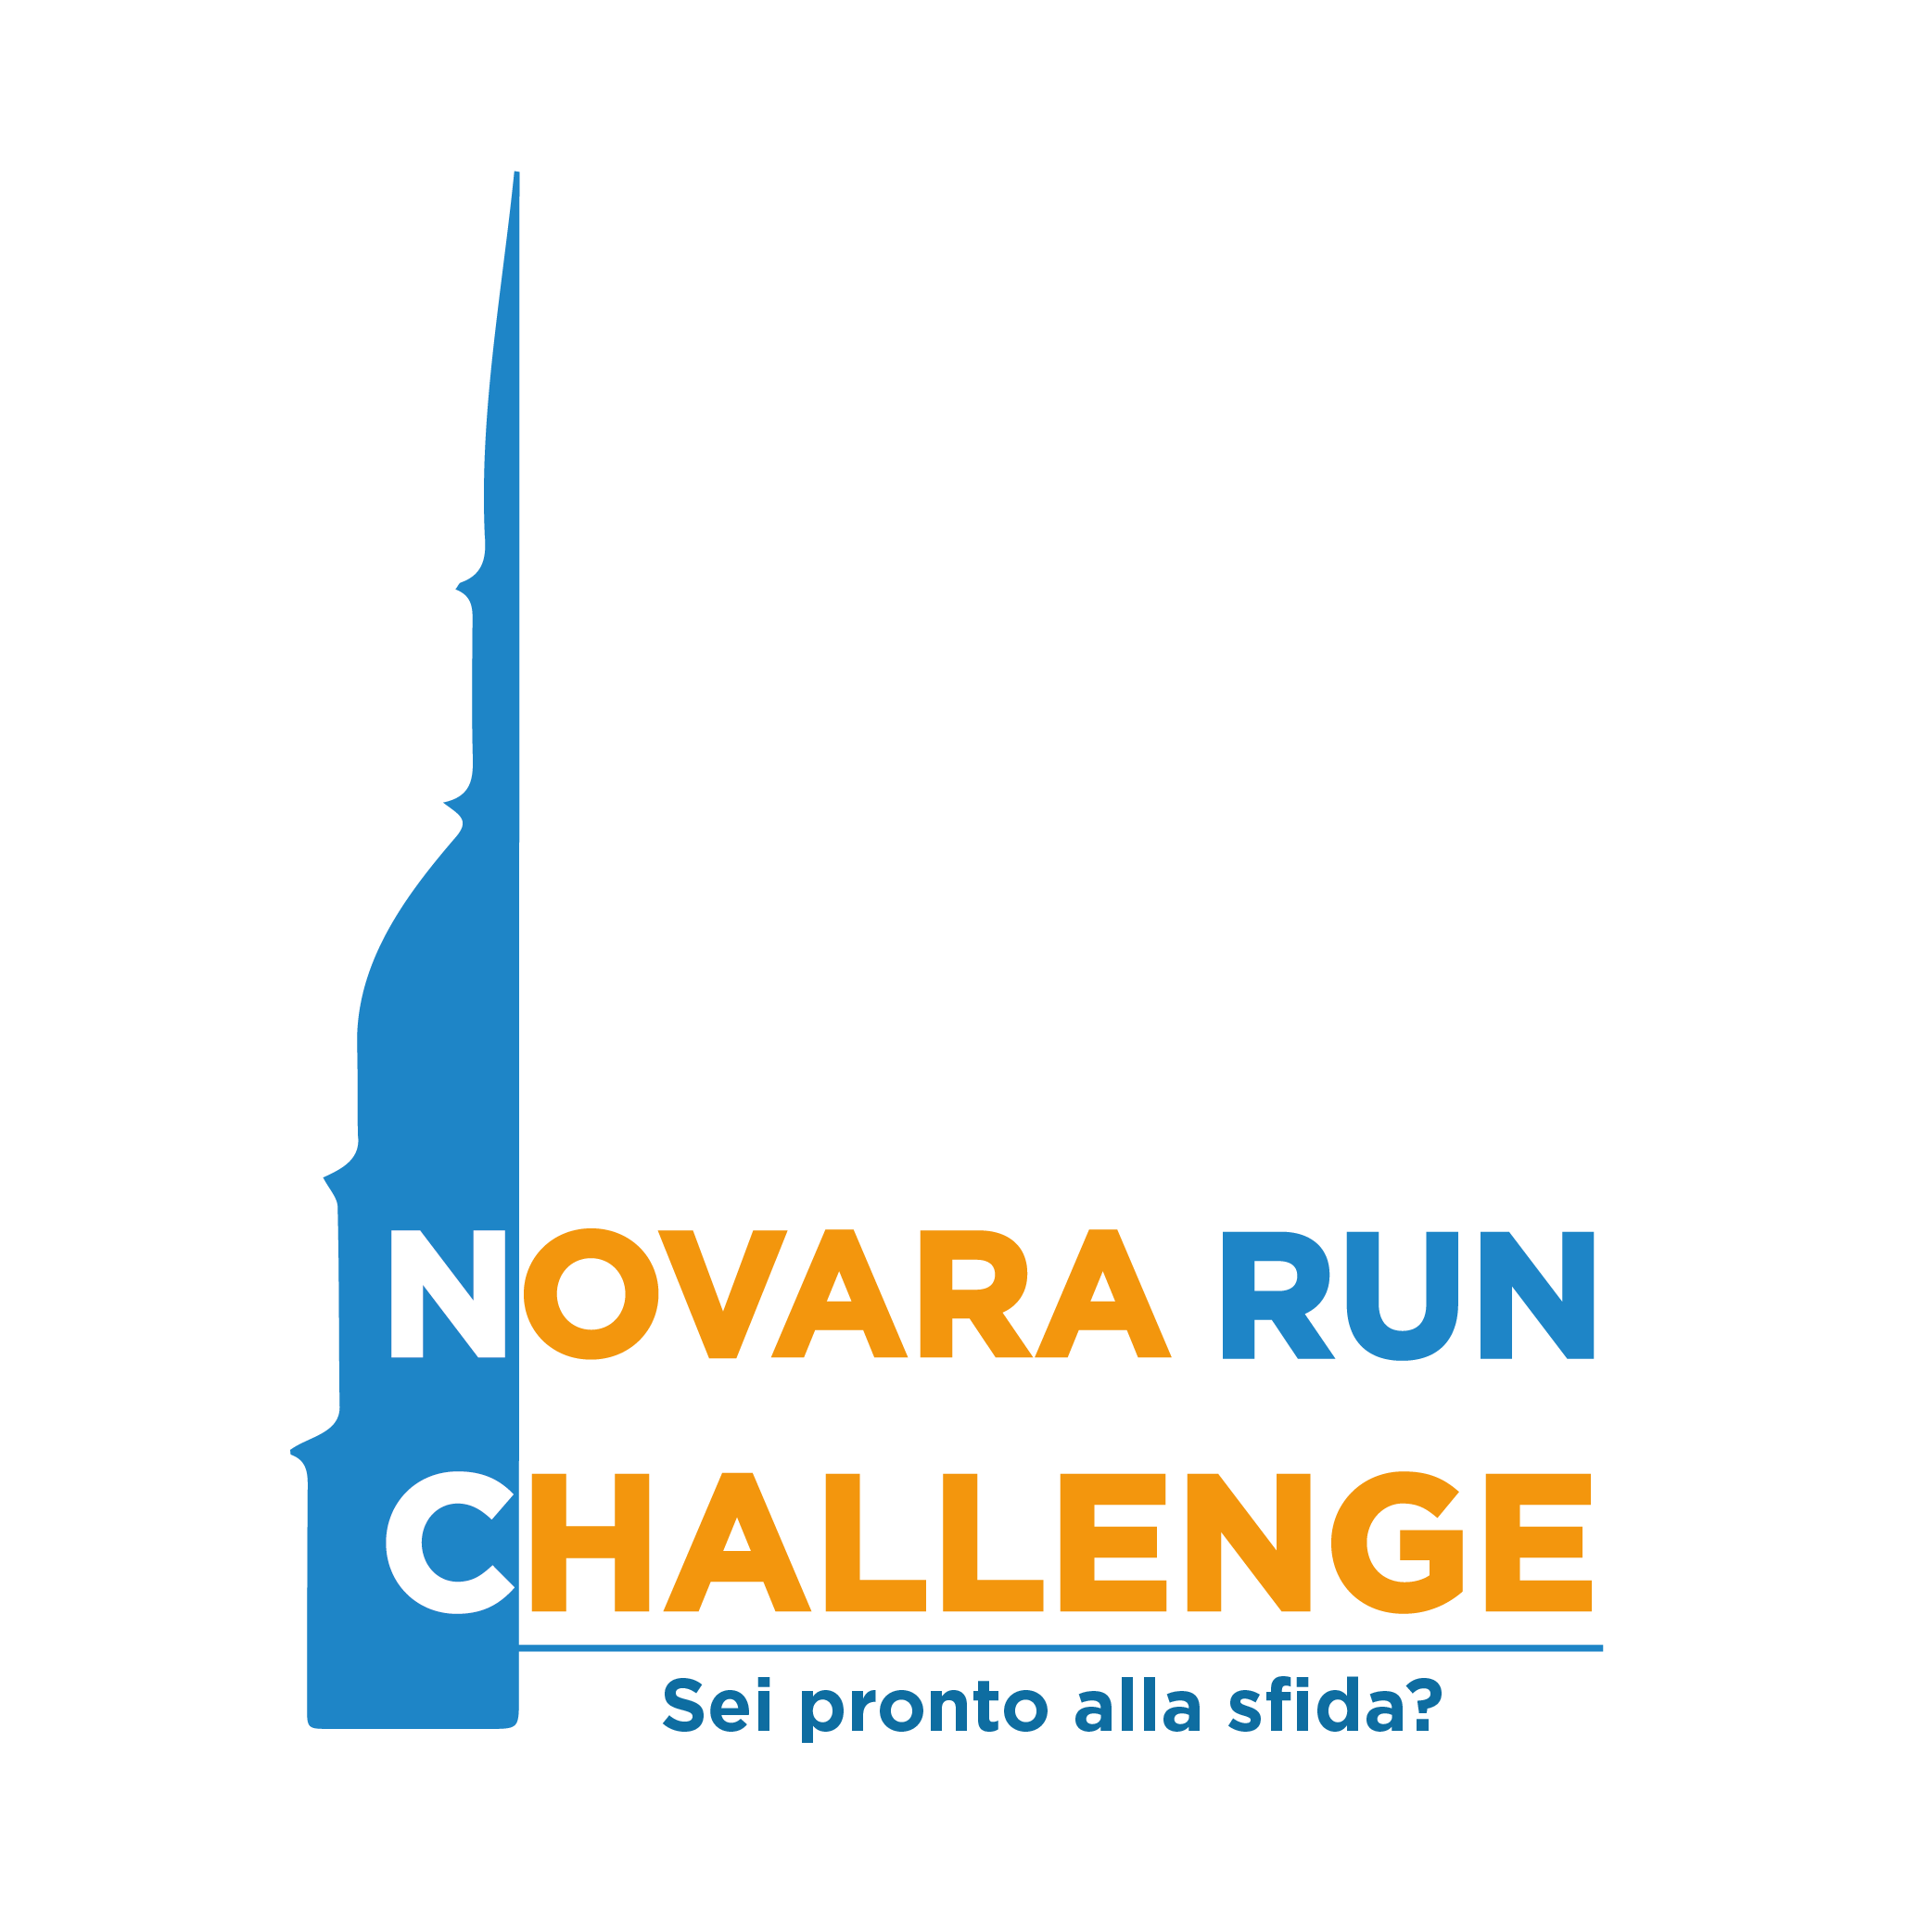 Novara Run Challenge è nostro cliente per la gestione social, la realizzazione e manutenzione del sito web e la creazione du grafiche e Brand Identity